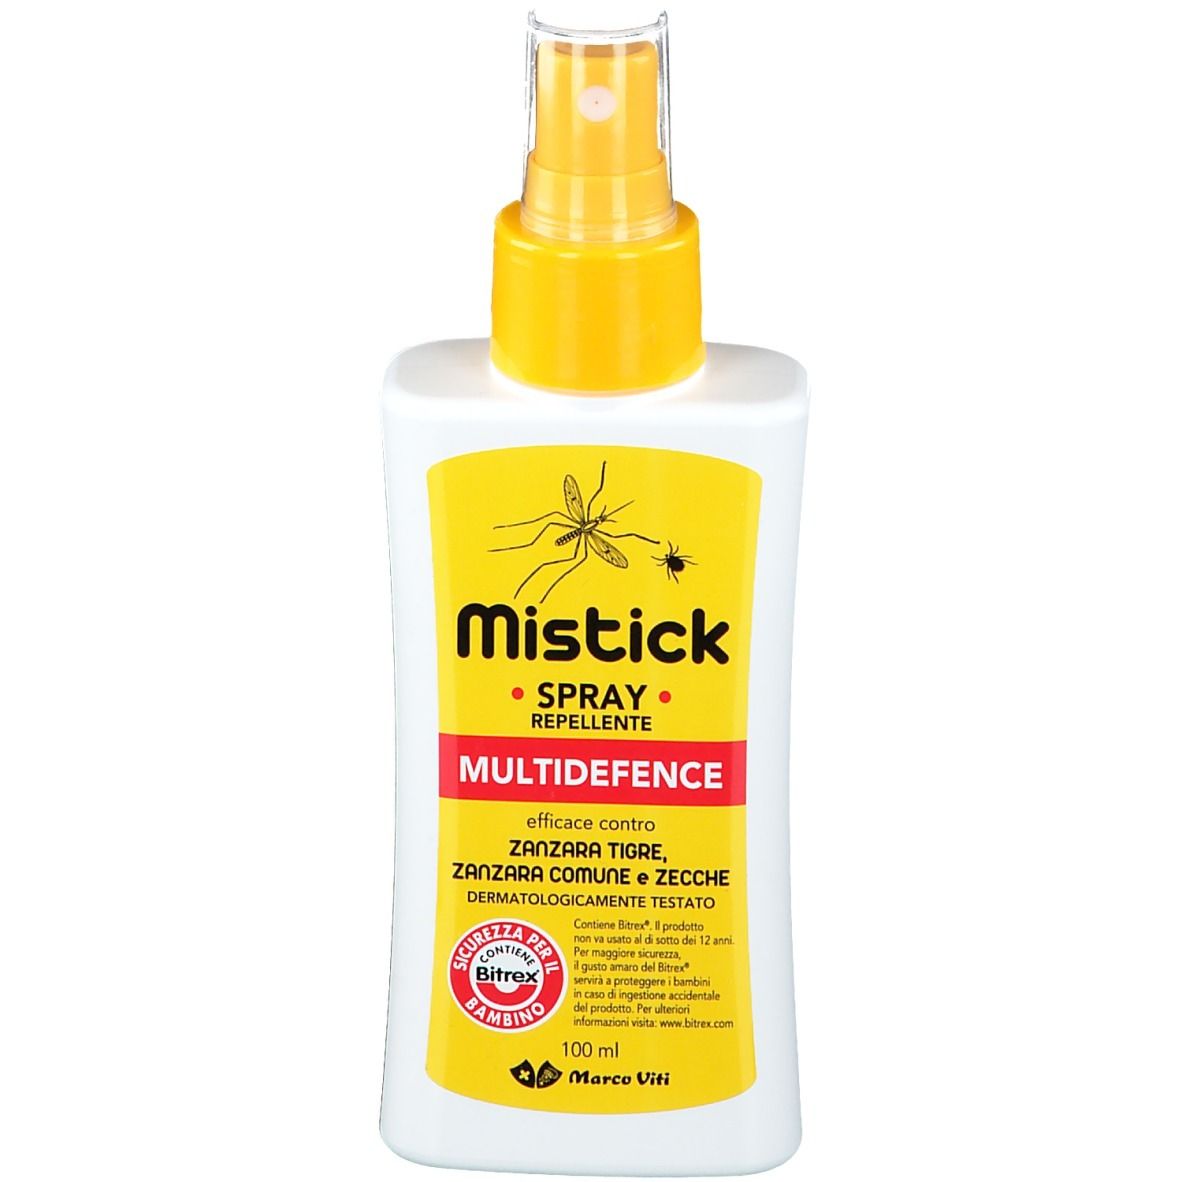 Mistick Spray Multidefence